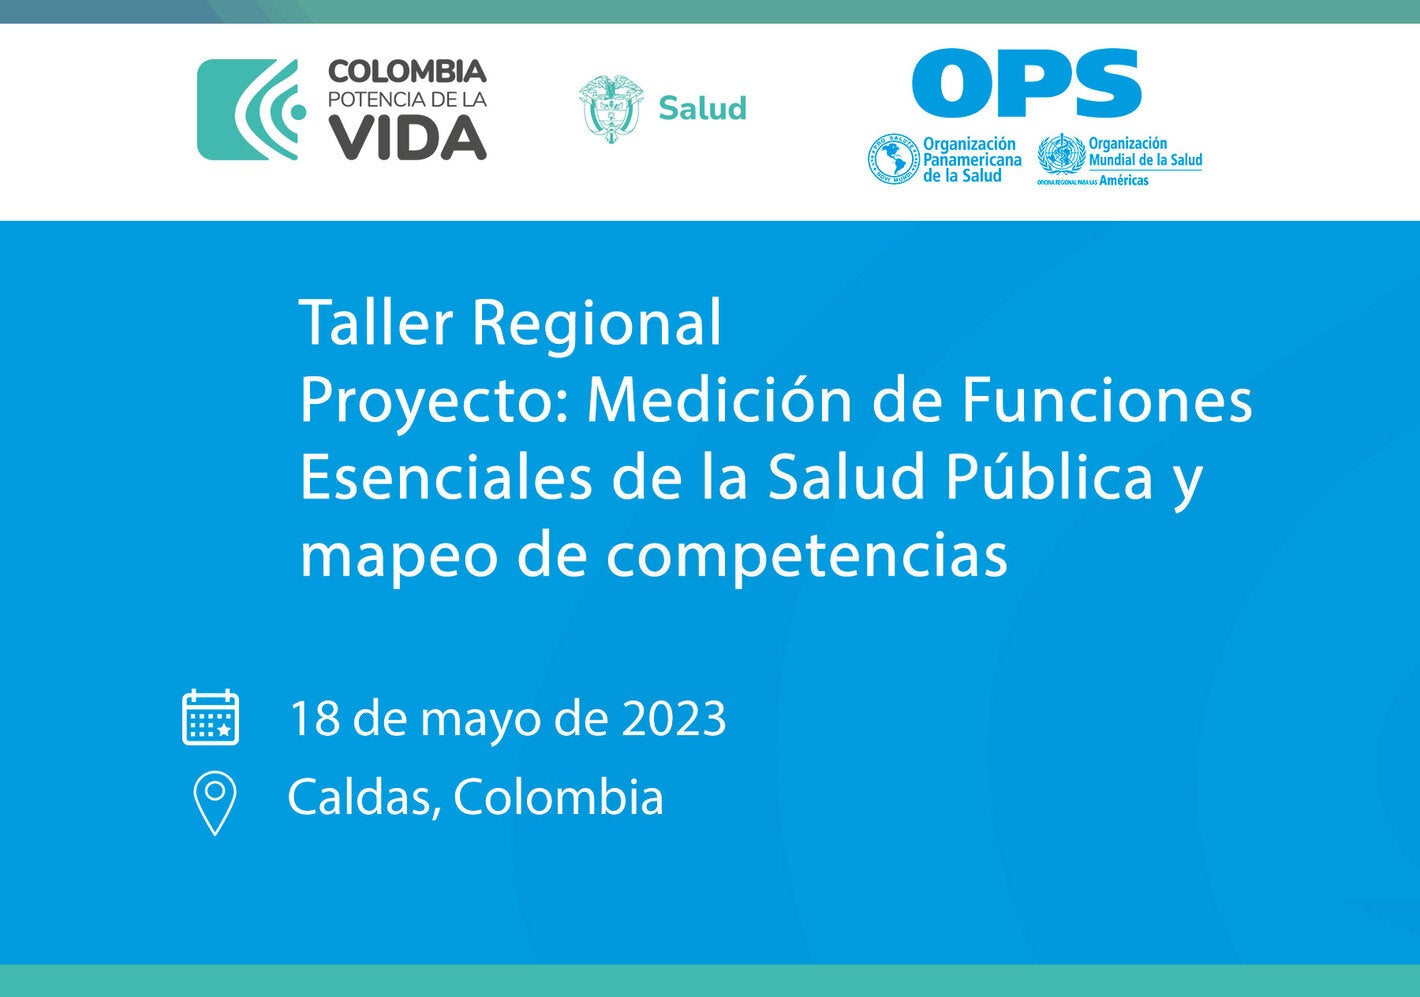 Taller Regional. Proyecto: Medición de Funciones Esenciales de la Salud Pública y mapeo de competencias. Departamento de Caldas, Colombia